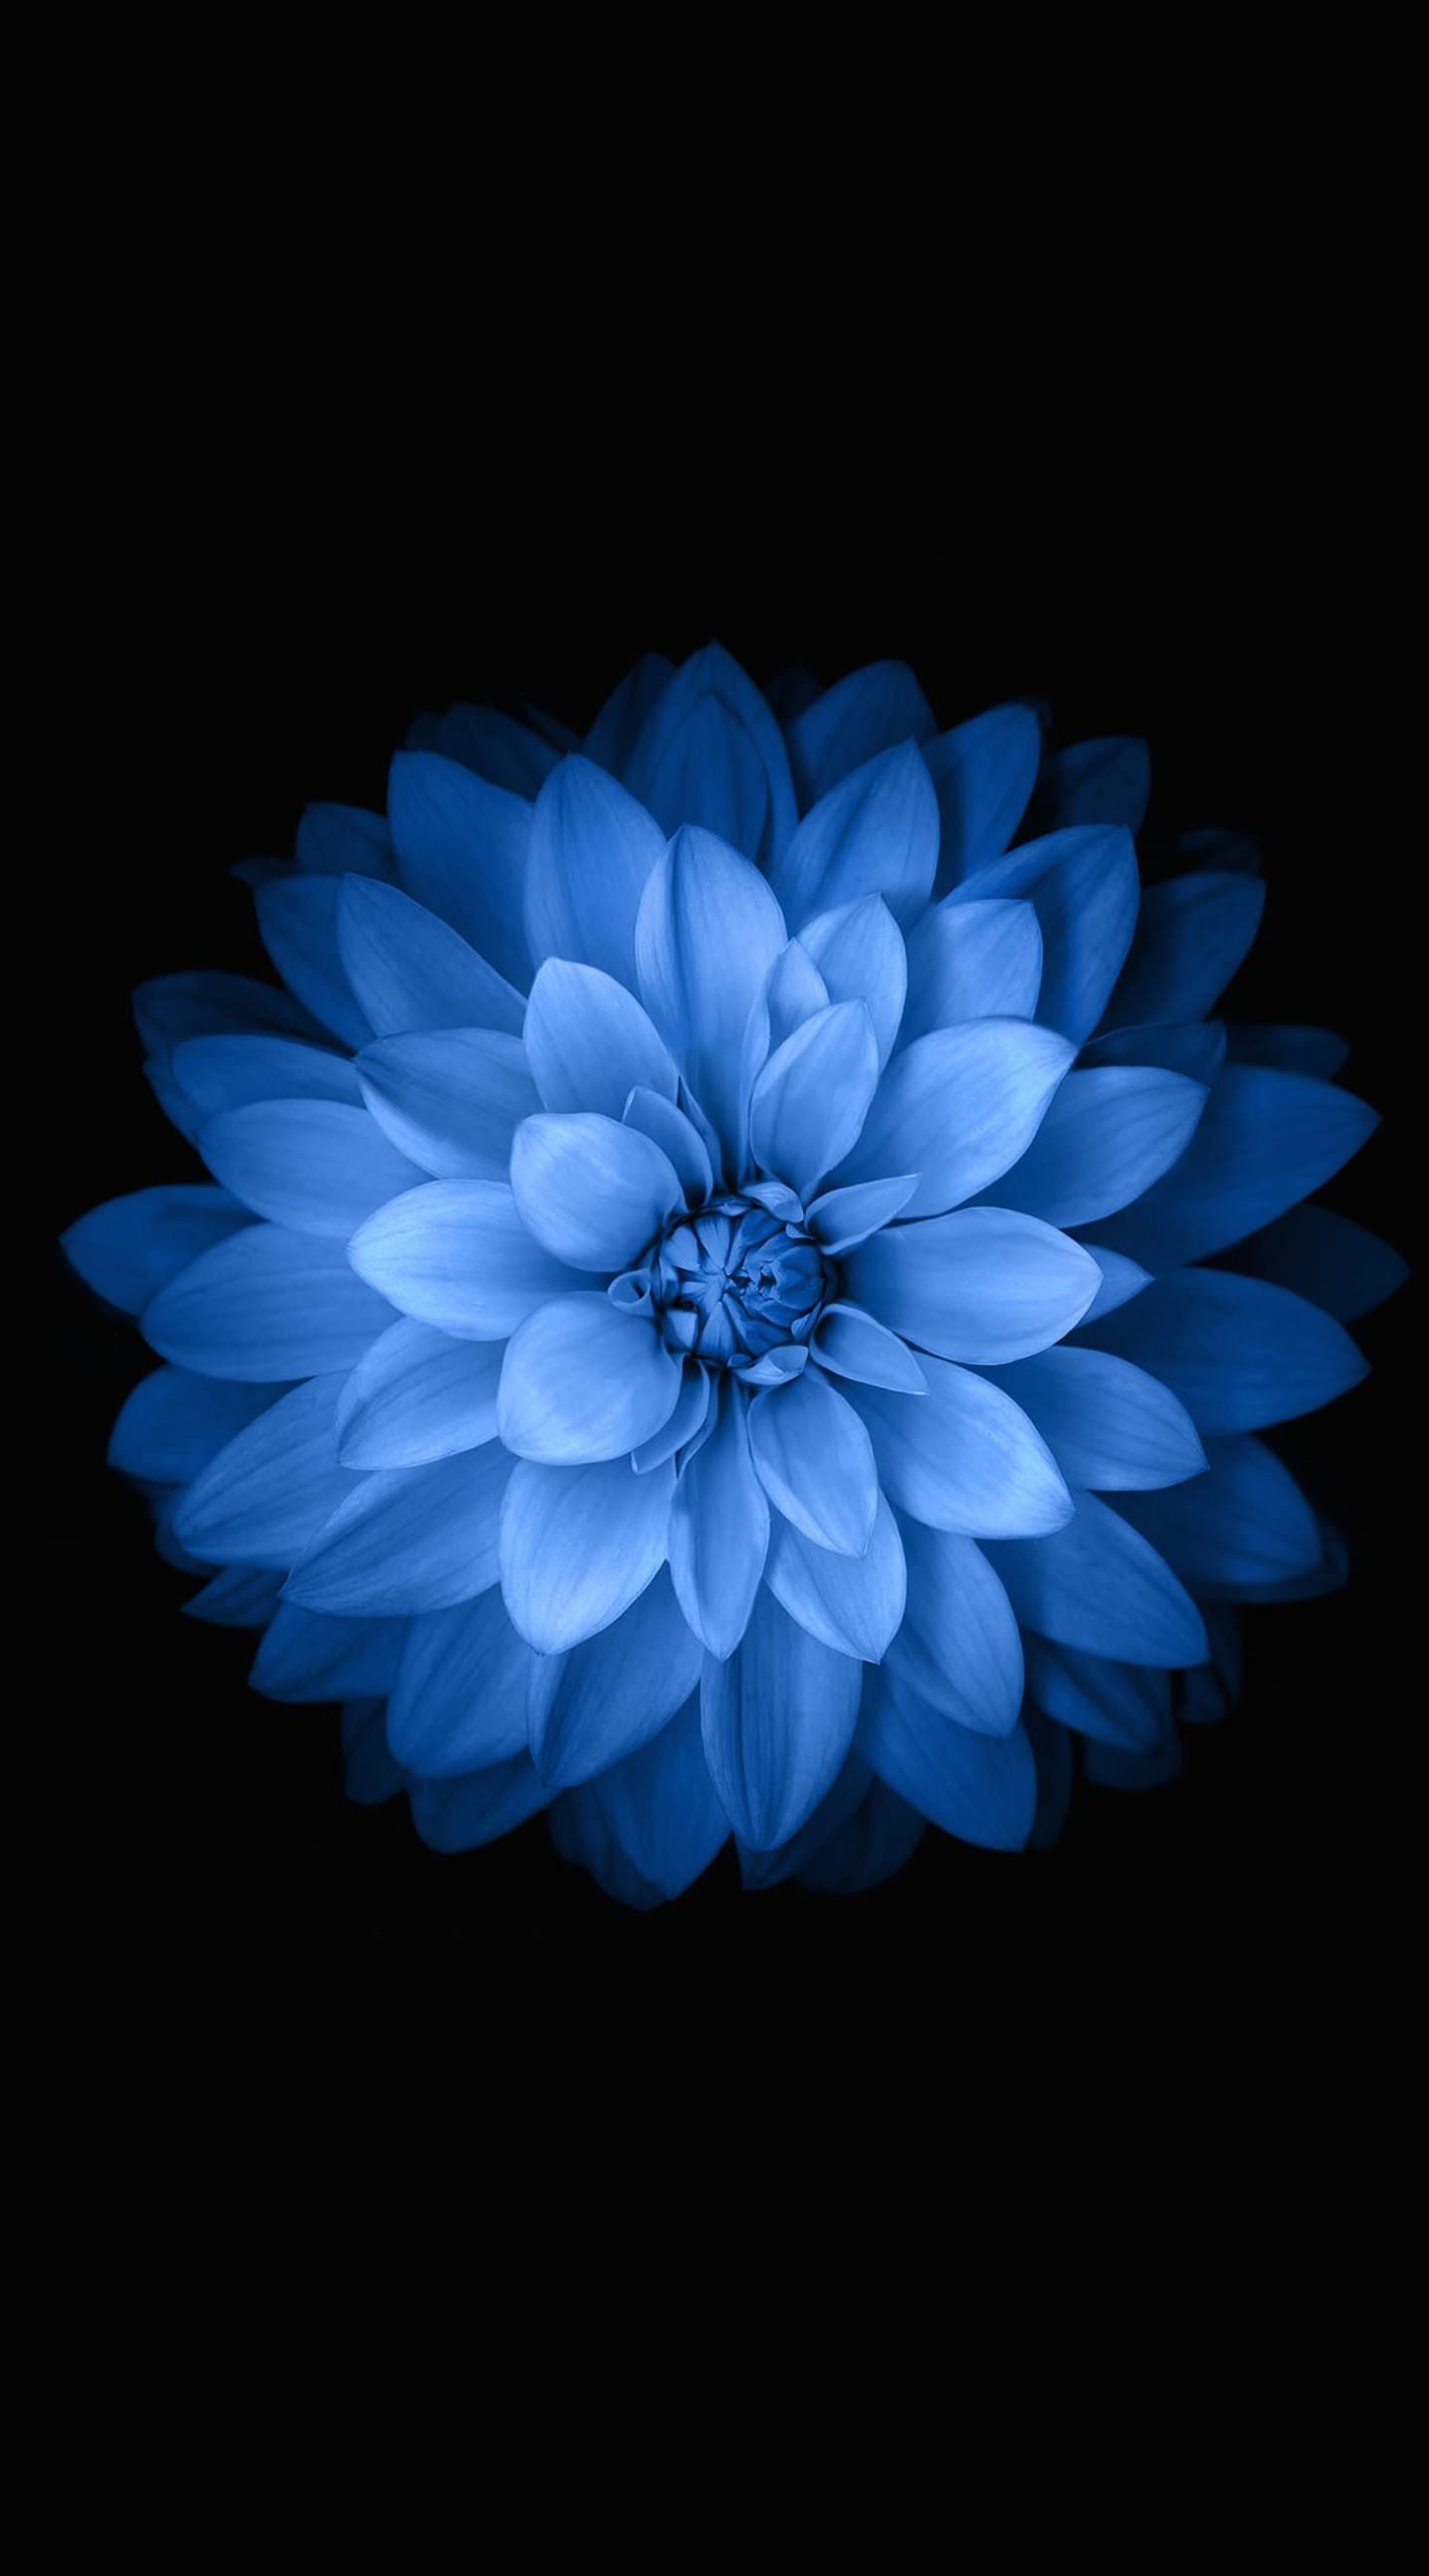 Flower iPhone HD Wallpaper